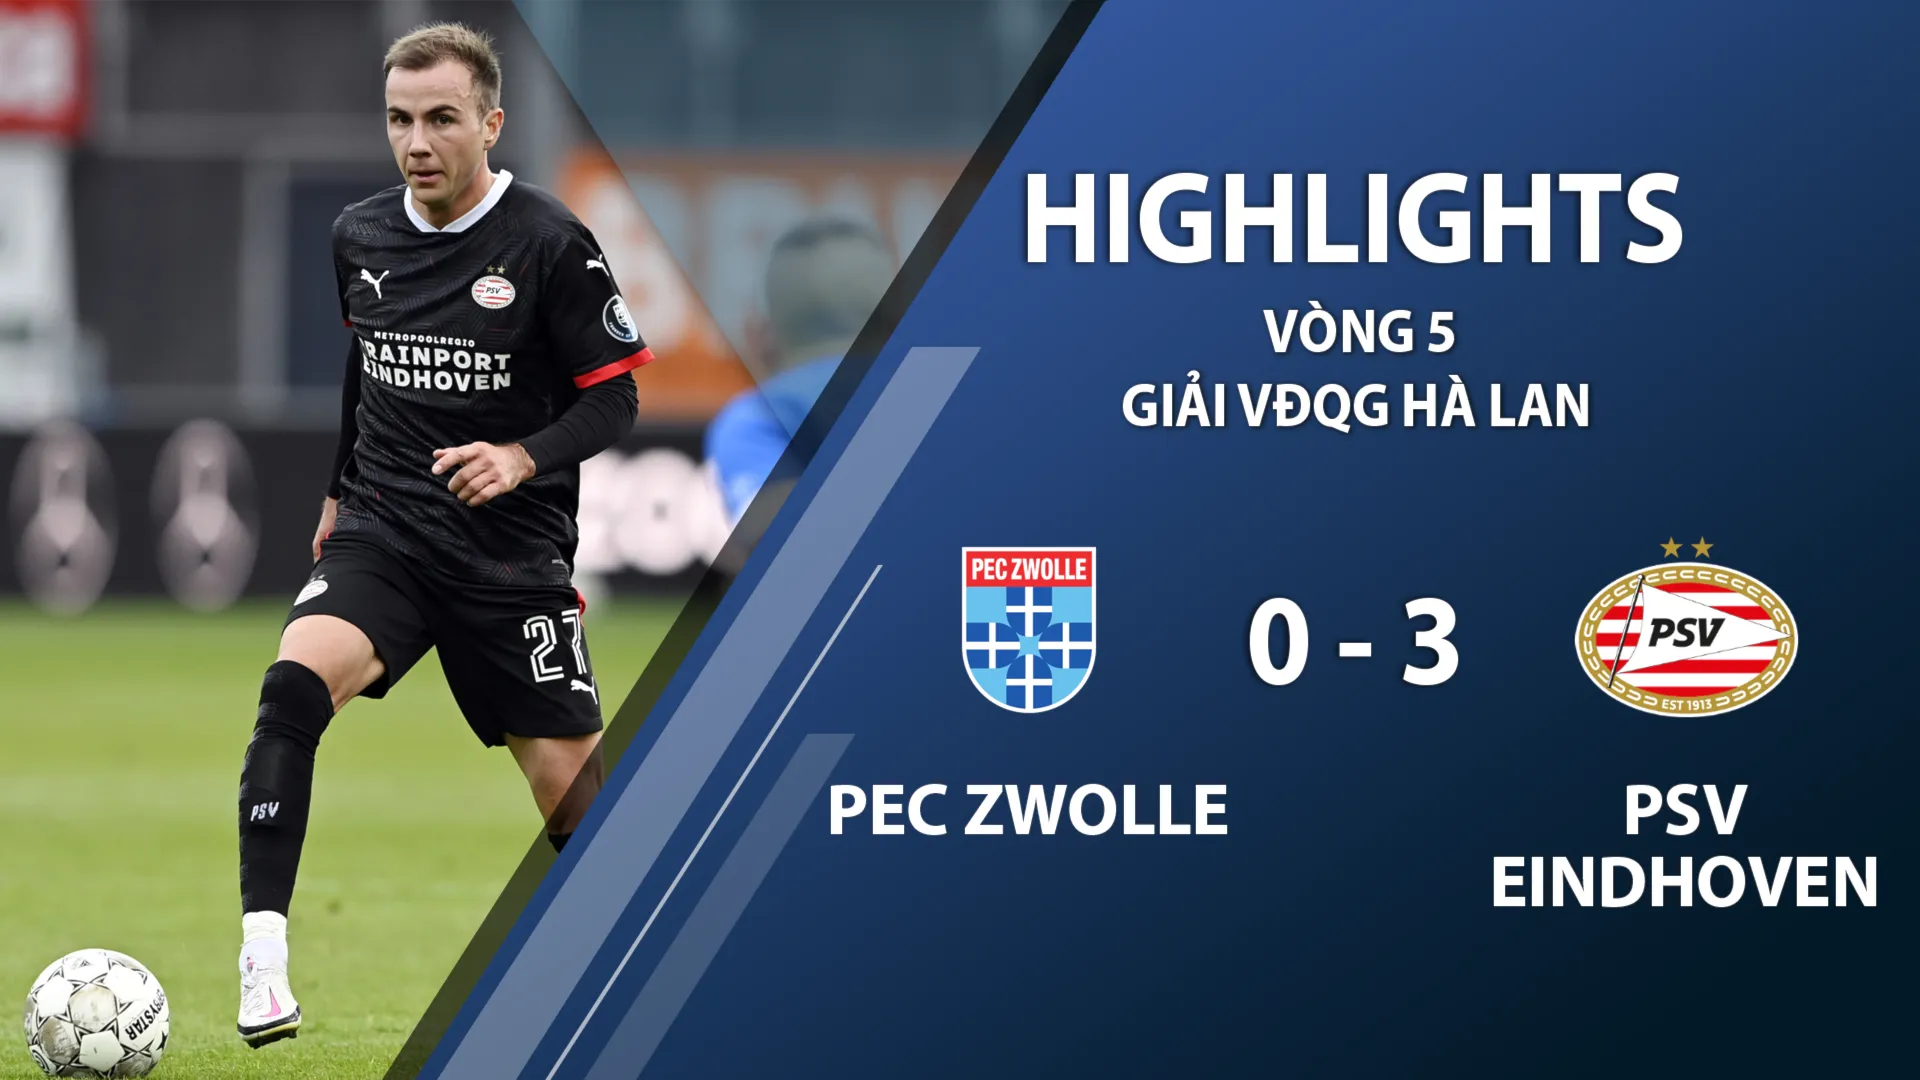 Highlights PEC Zwolle 0-3 PSV Eindhoven (vòng 5 giải VĐQG Hà Lan 2020/21)	